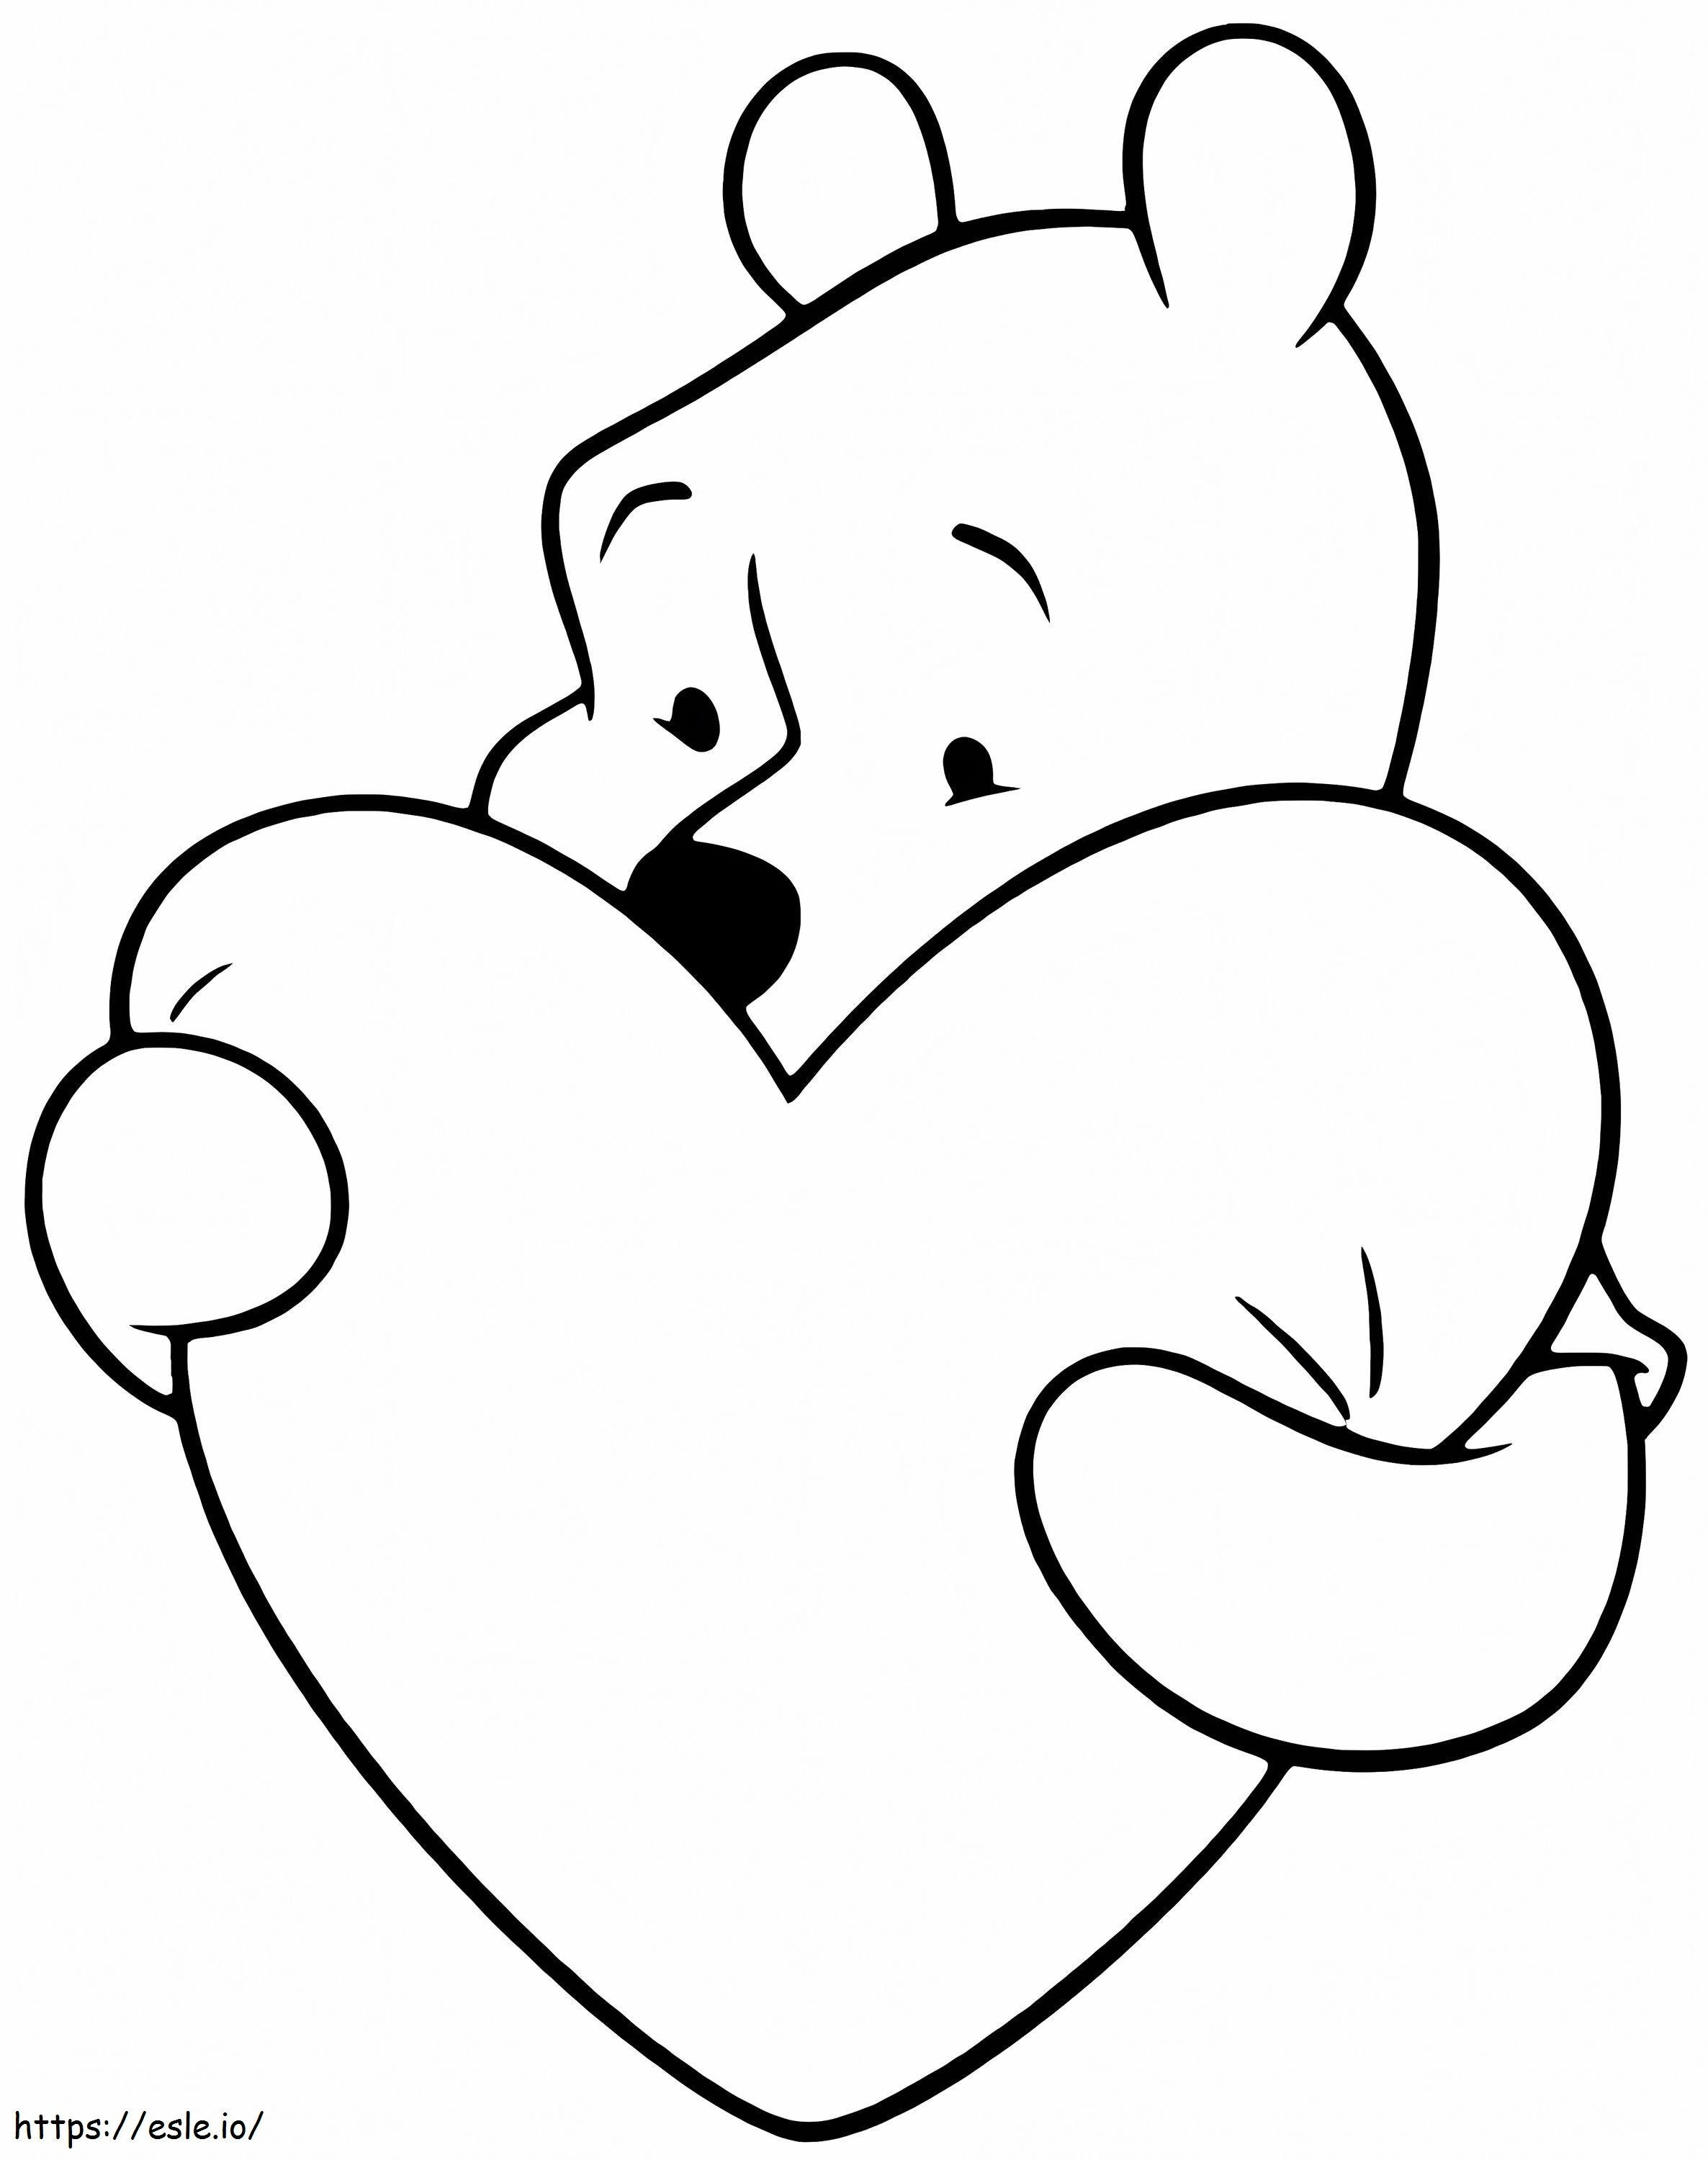 Urso Pooh abraça coração para colorir